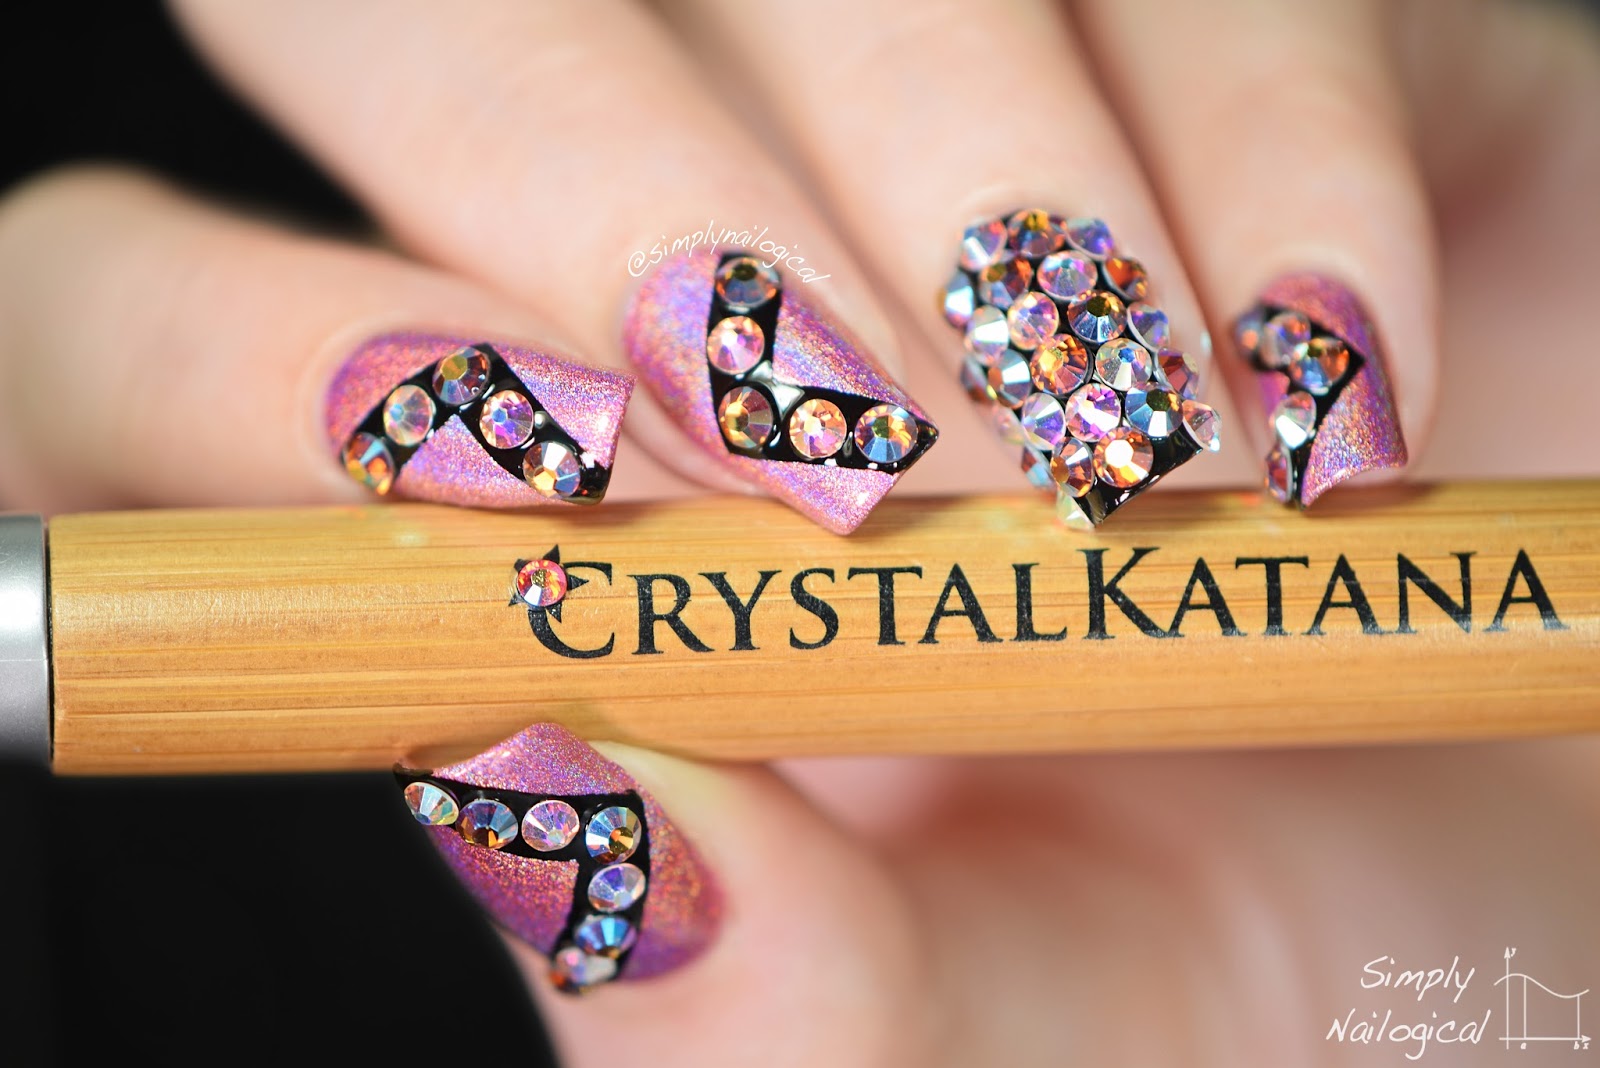 Simply Nailogical: Crystal bling nails with the Crystal Katana